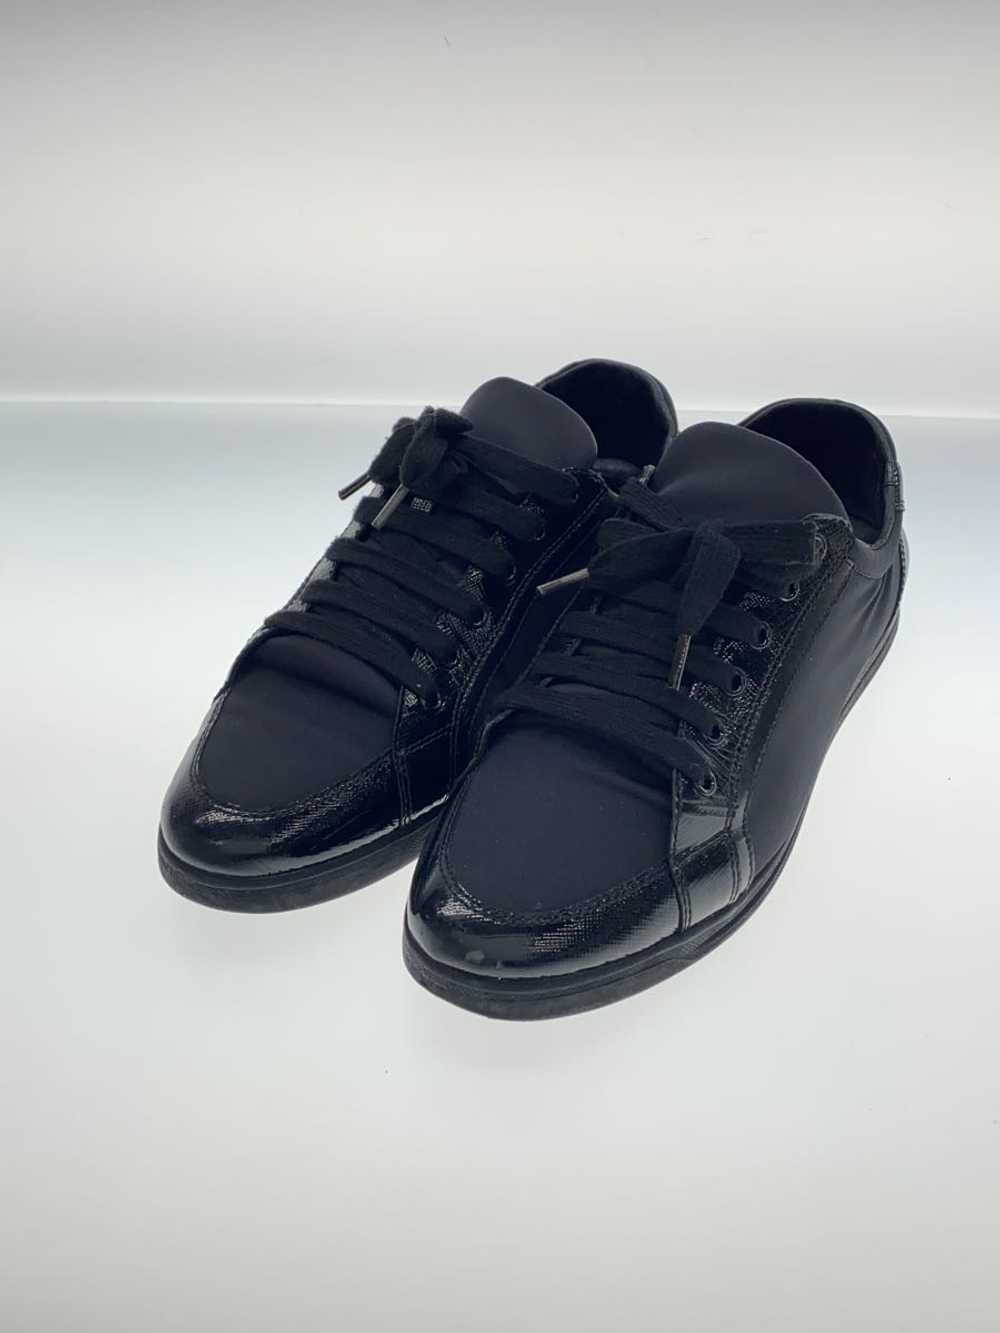 Prada Tessuto/Low Cut Sneakers/37/Blk/Black/Nylon… - image 2